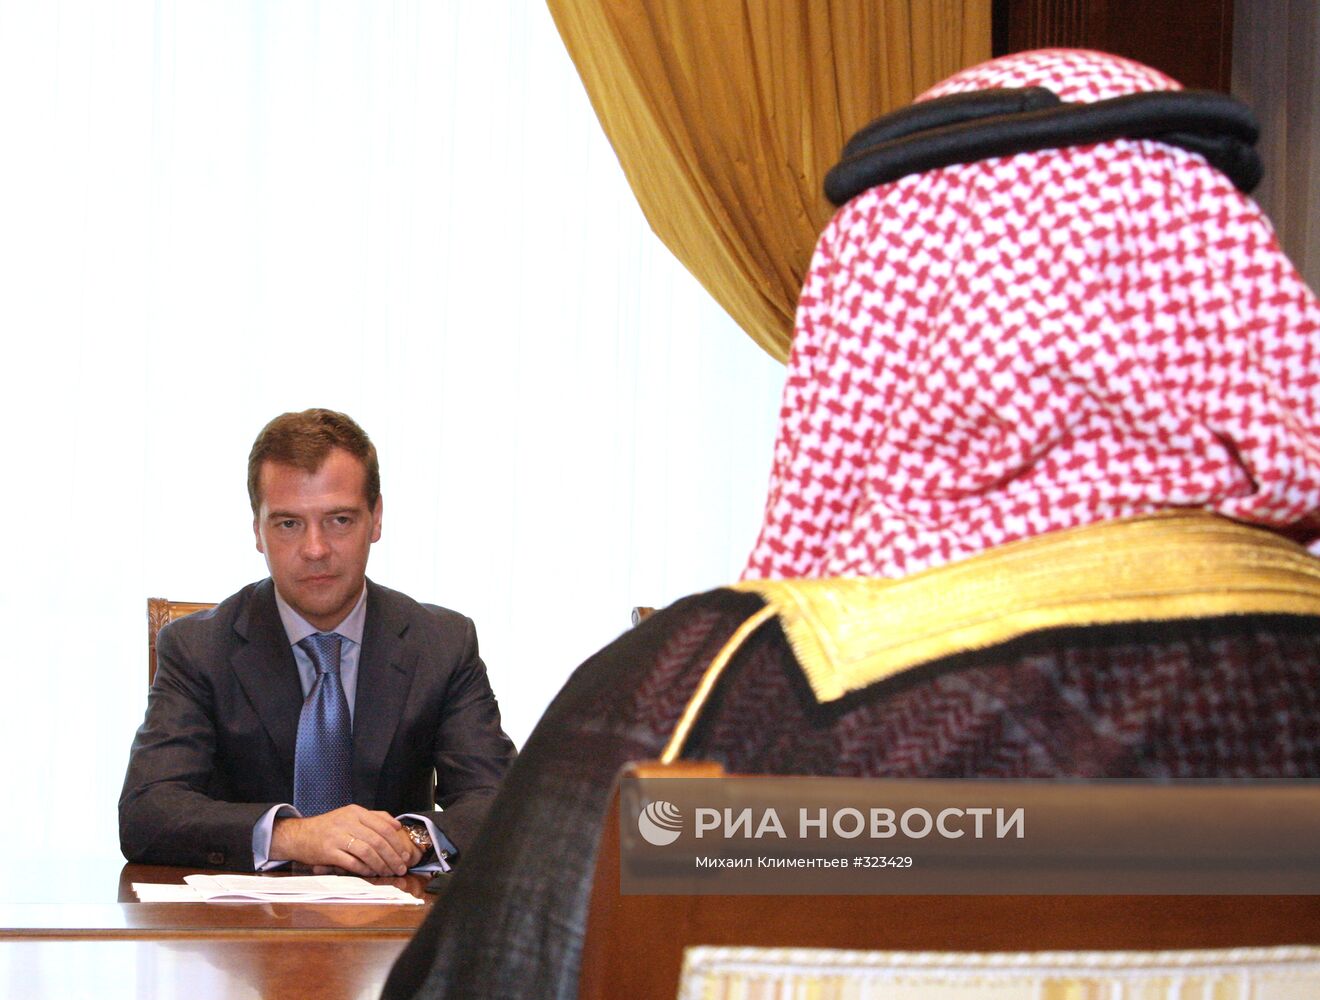 Дмитрий Медведев и Бандар бин Султан бин Абдель Азиз Аль Сауд